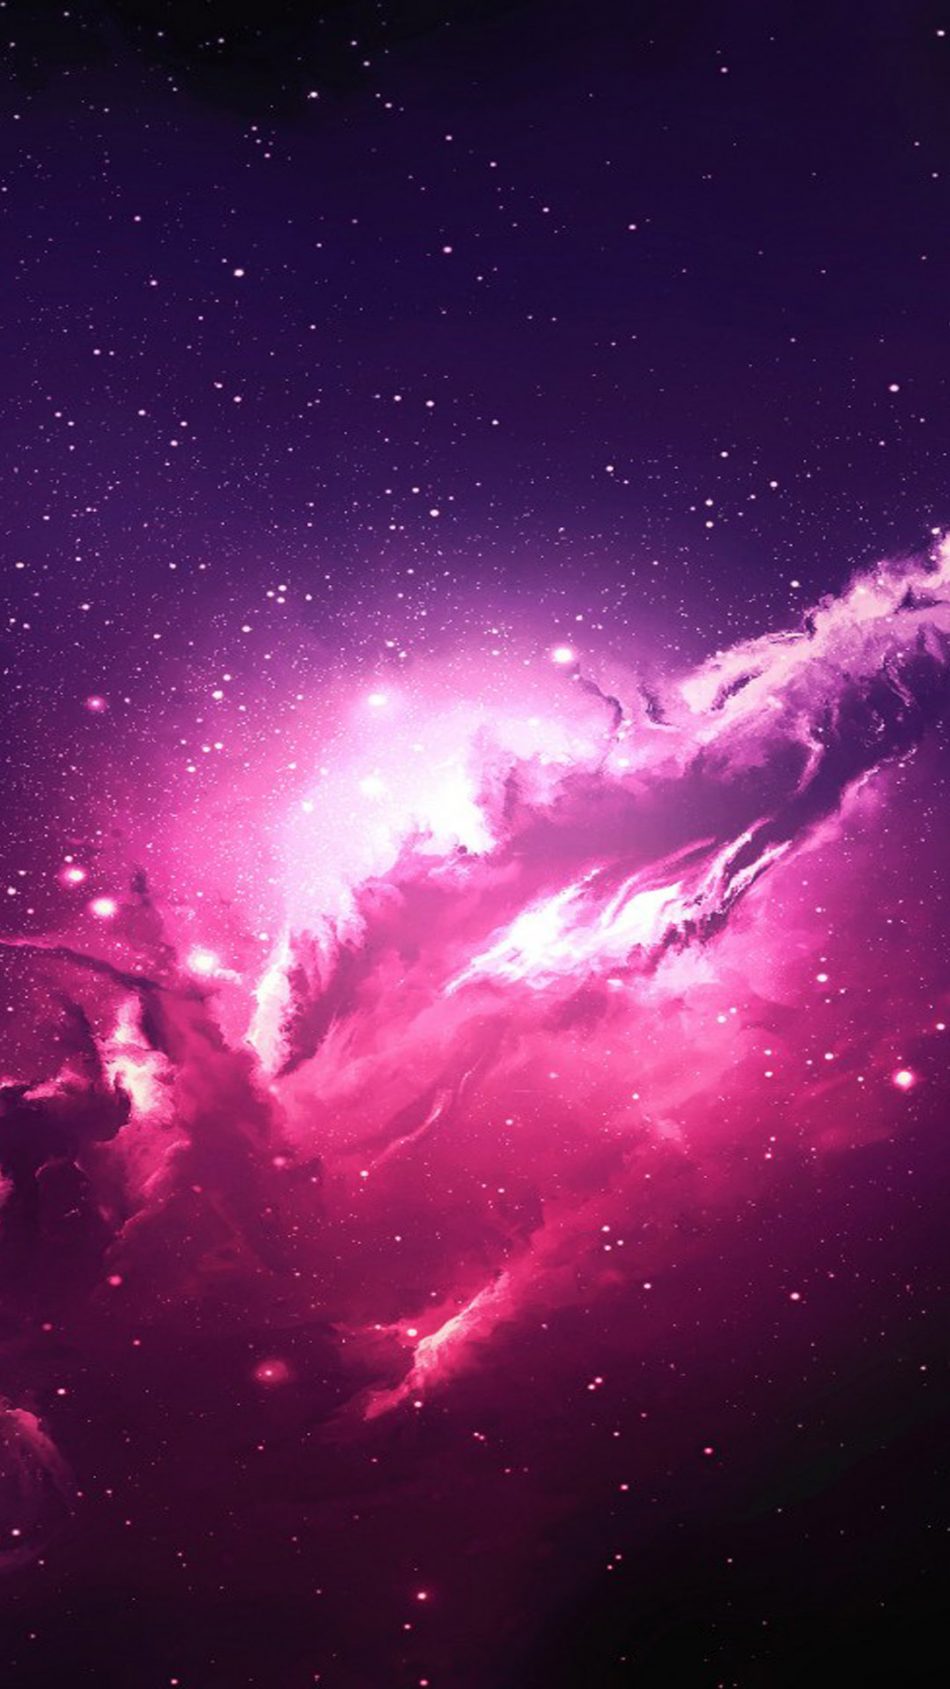 Siêu dữ liệu vũ trụ cực kì độc đáo. Hình nền vệ tinh nebula làm tăng sự tò mò của bạn về những vùng đất xa xôi trong vũ trụ. Khám phá những điều thú vị cùng những bức ảnh đẹp này.